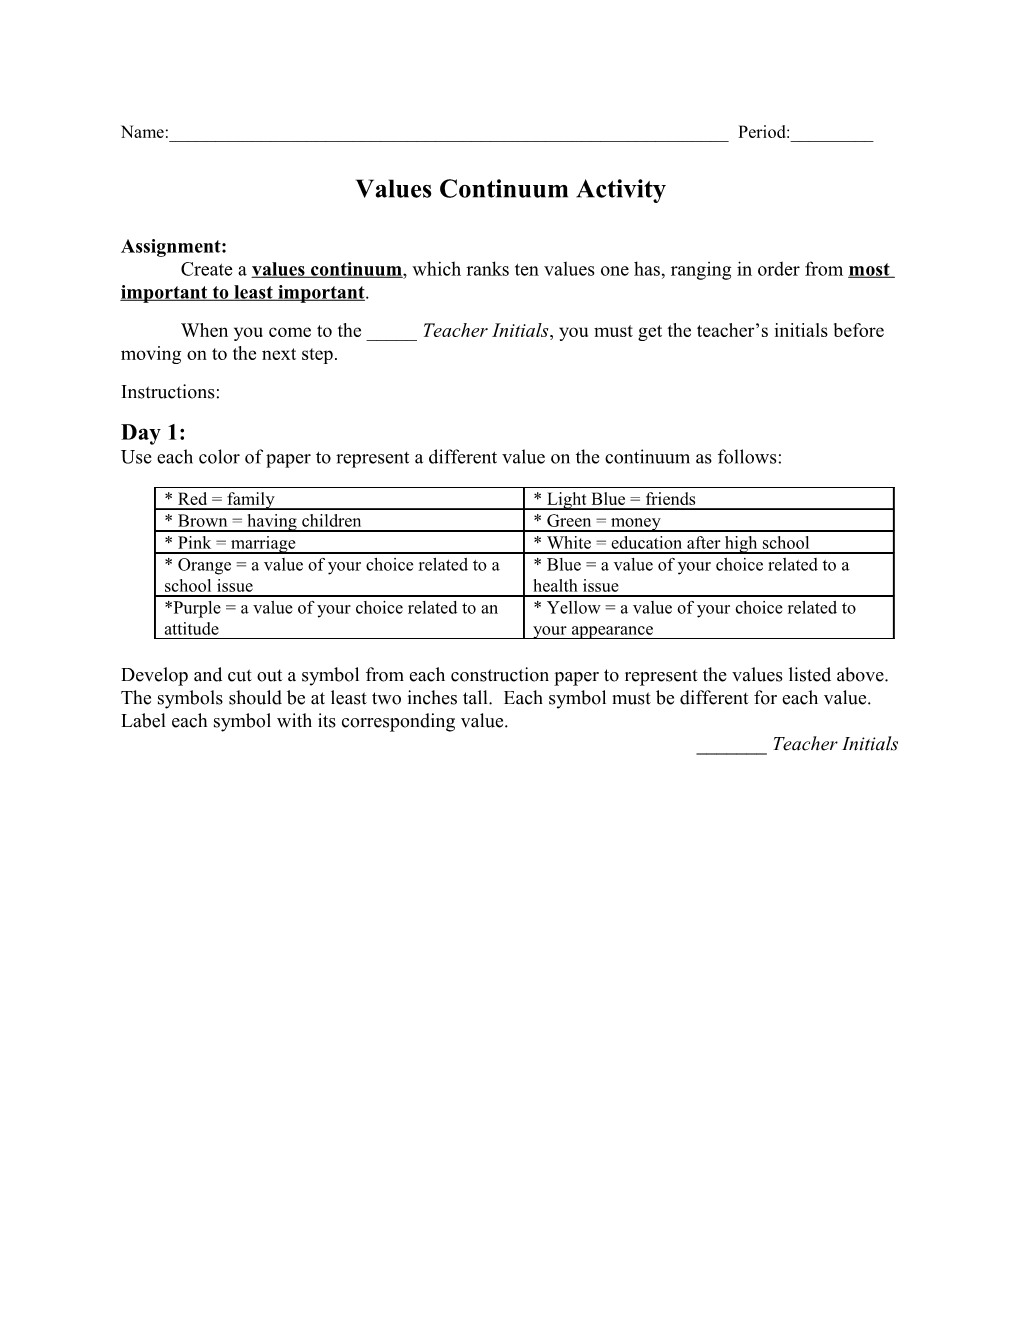 Values Continuum Activity